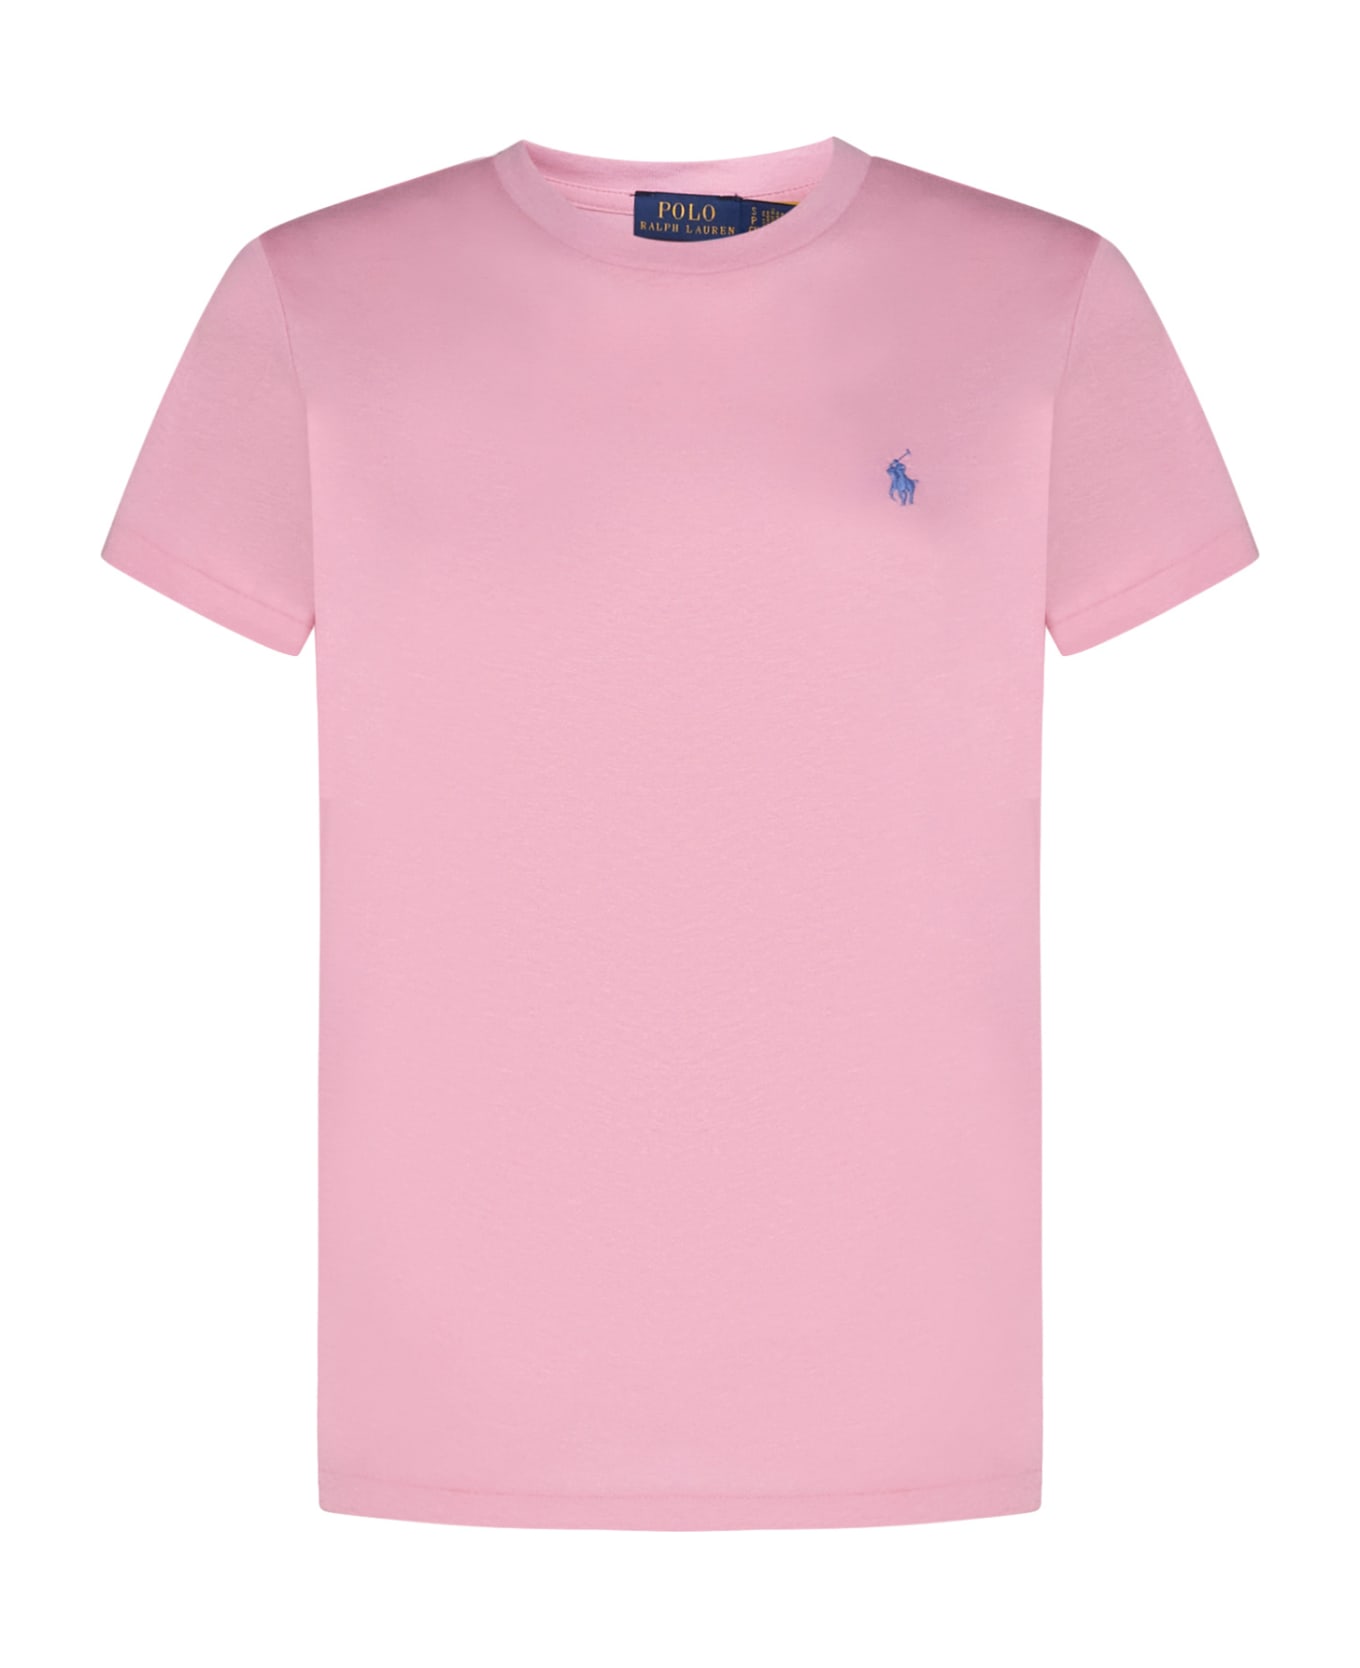 Polo Ralph Lauren T-Shirt - Course pink